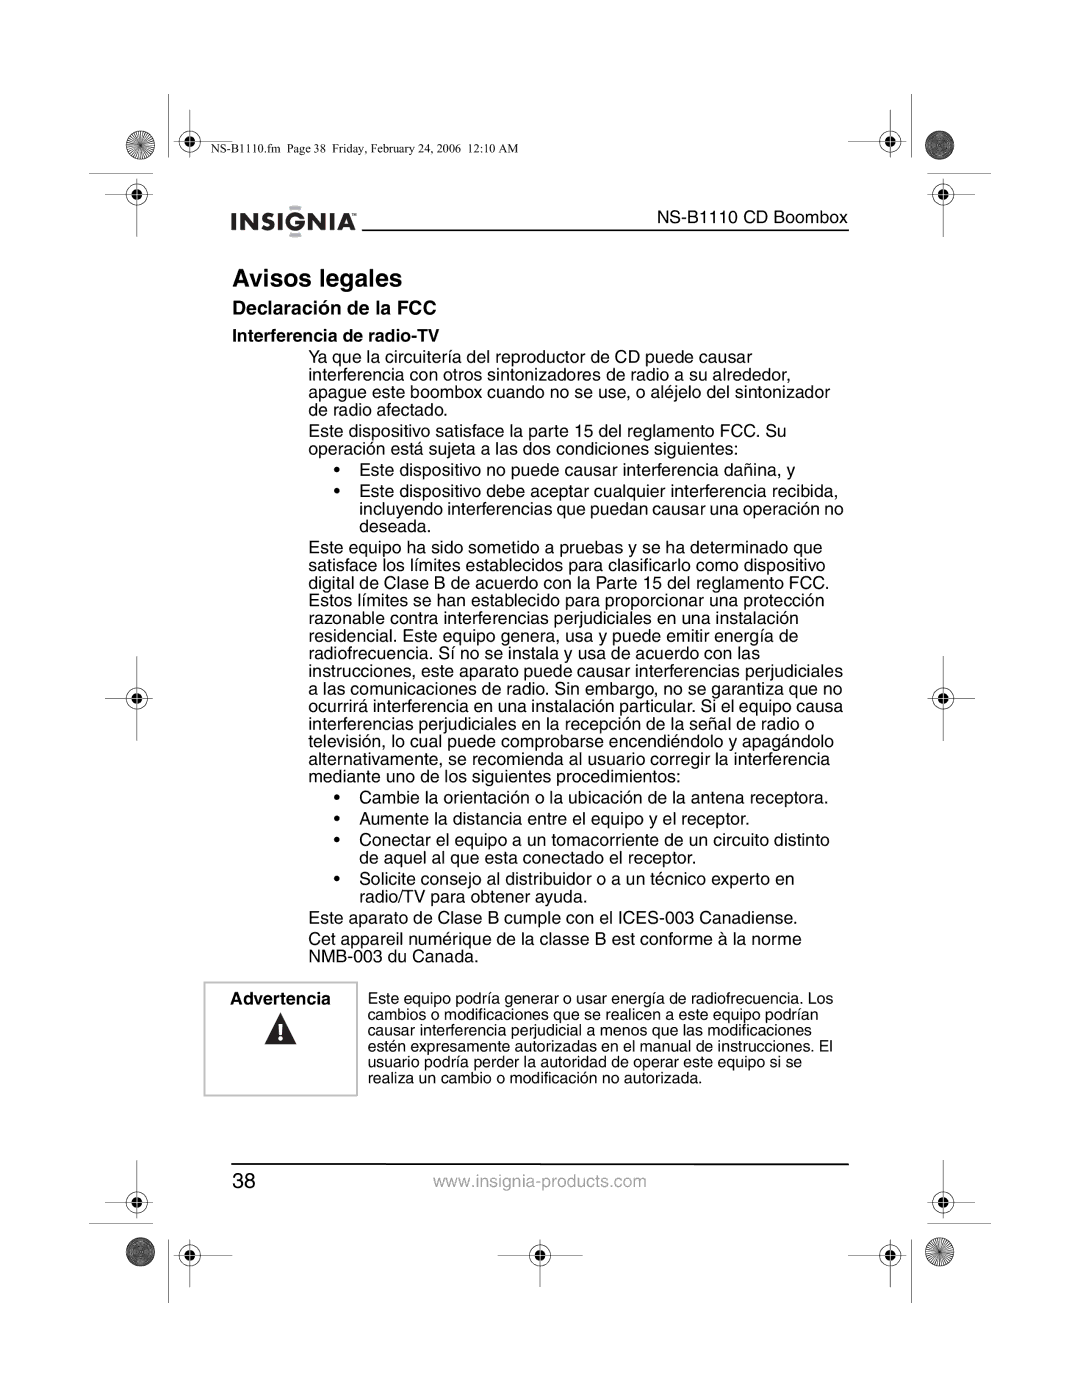 Insignia NS-B1110 manual Avisos legales, Declaración de la FCC, Interferencia de radio-TV, Advertencia 